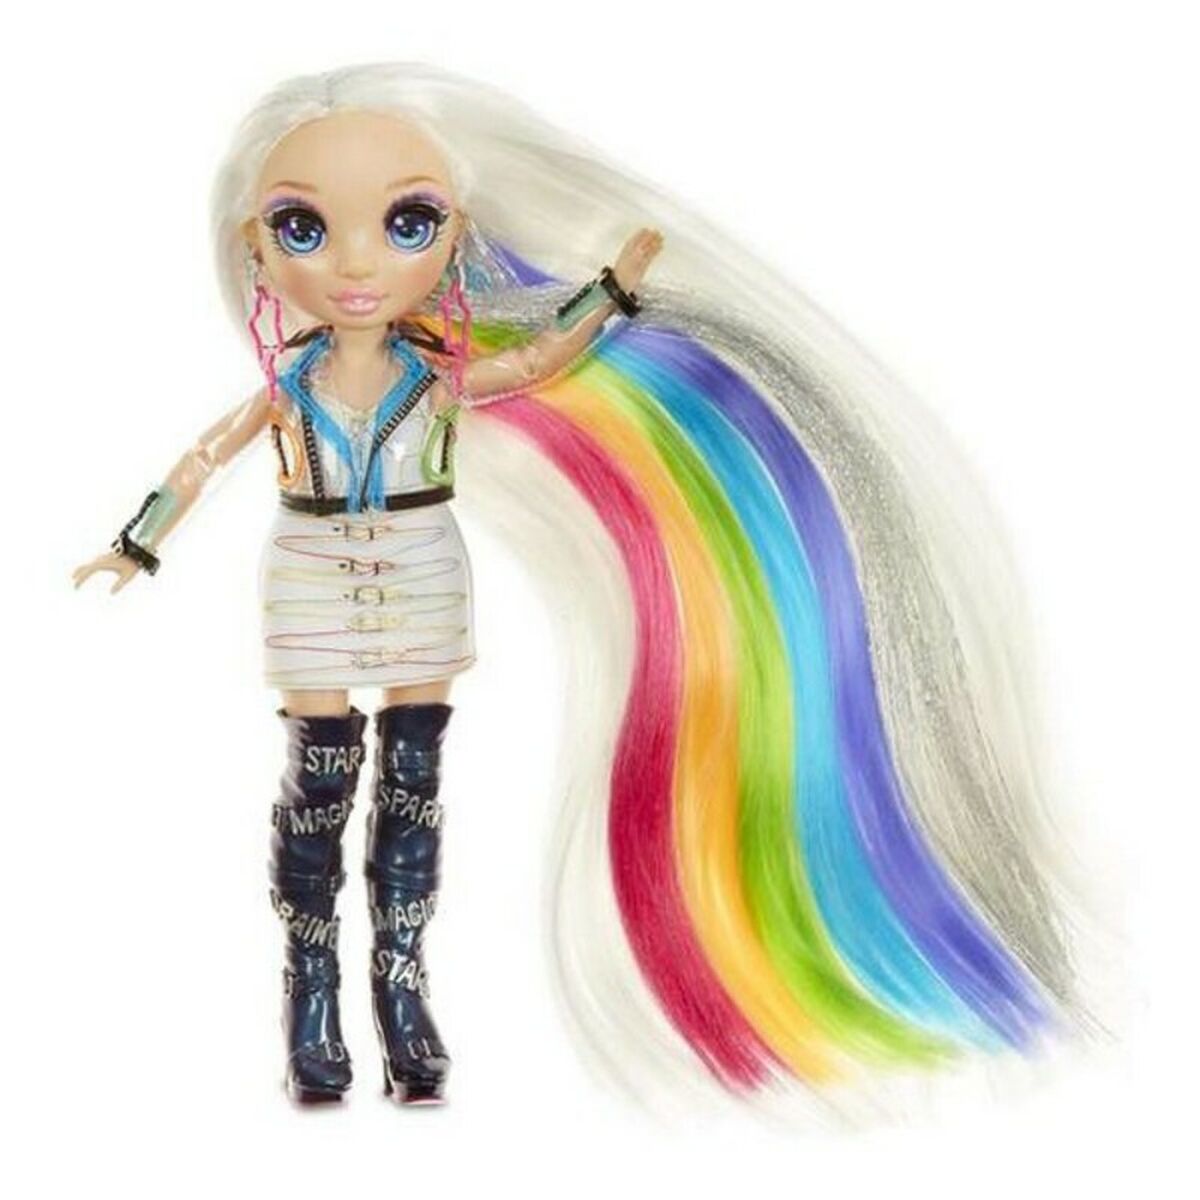 Playset Rainbow Hair Studio Rainbow High 569329E7C 5 en 1 (30 cm)